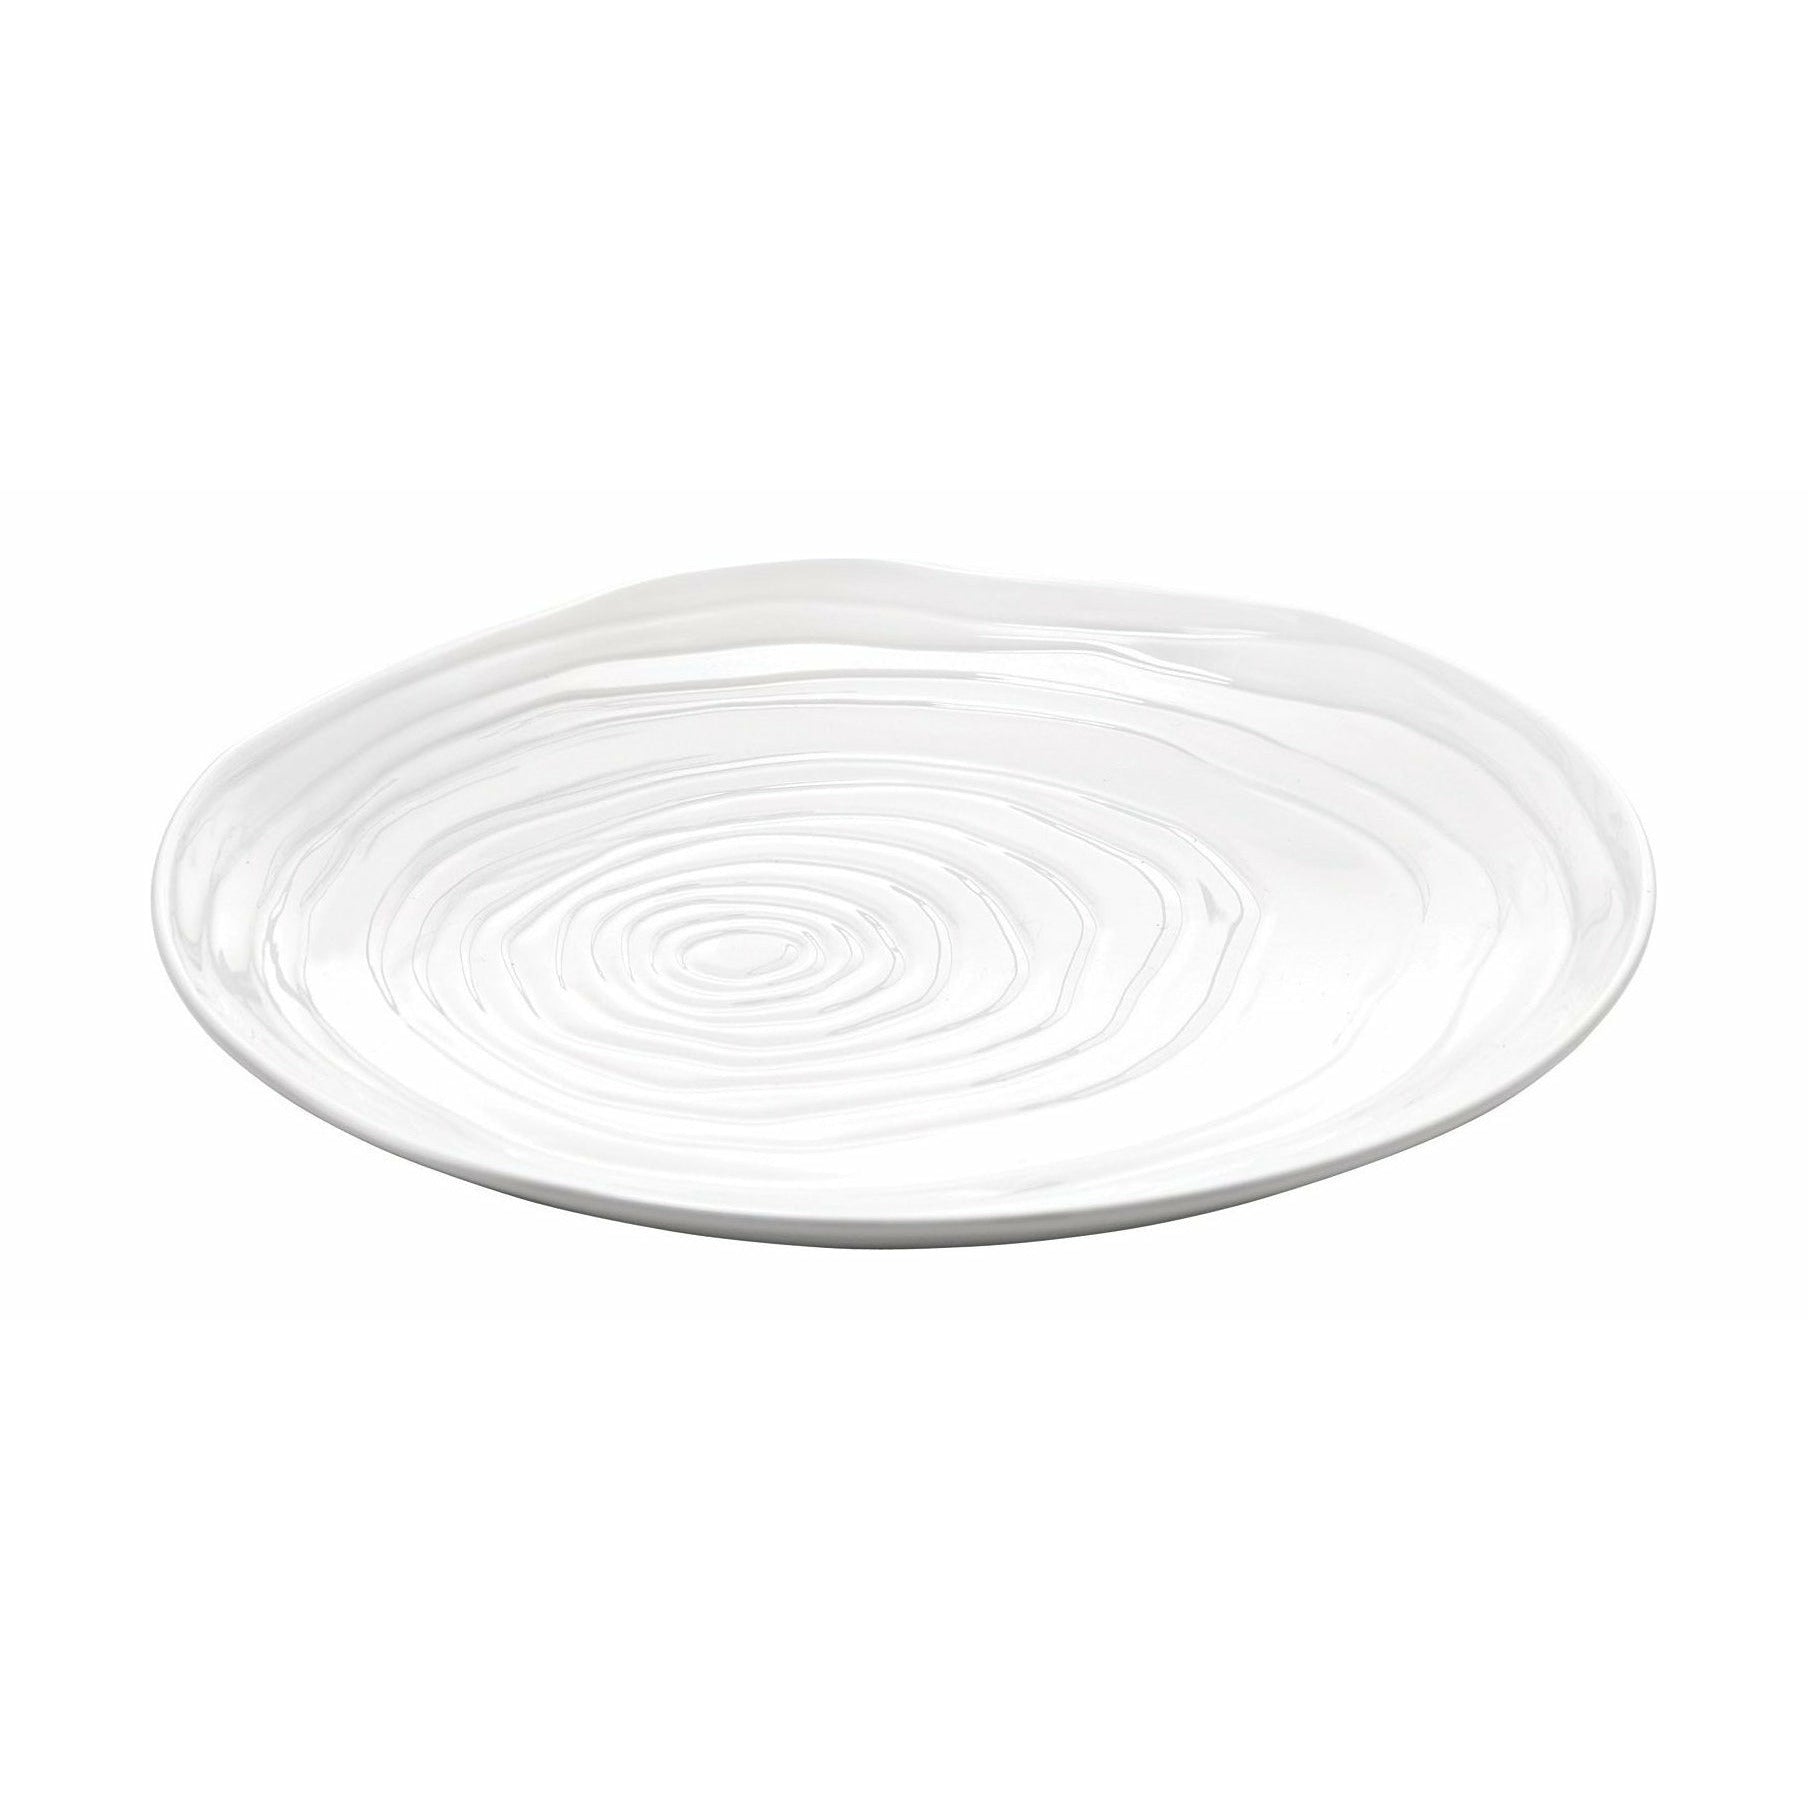 Pillivuyt Boulogne Plate White, 16,5 cm